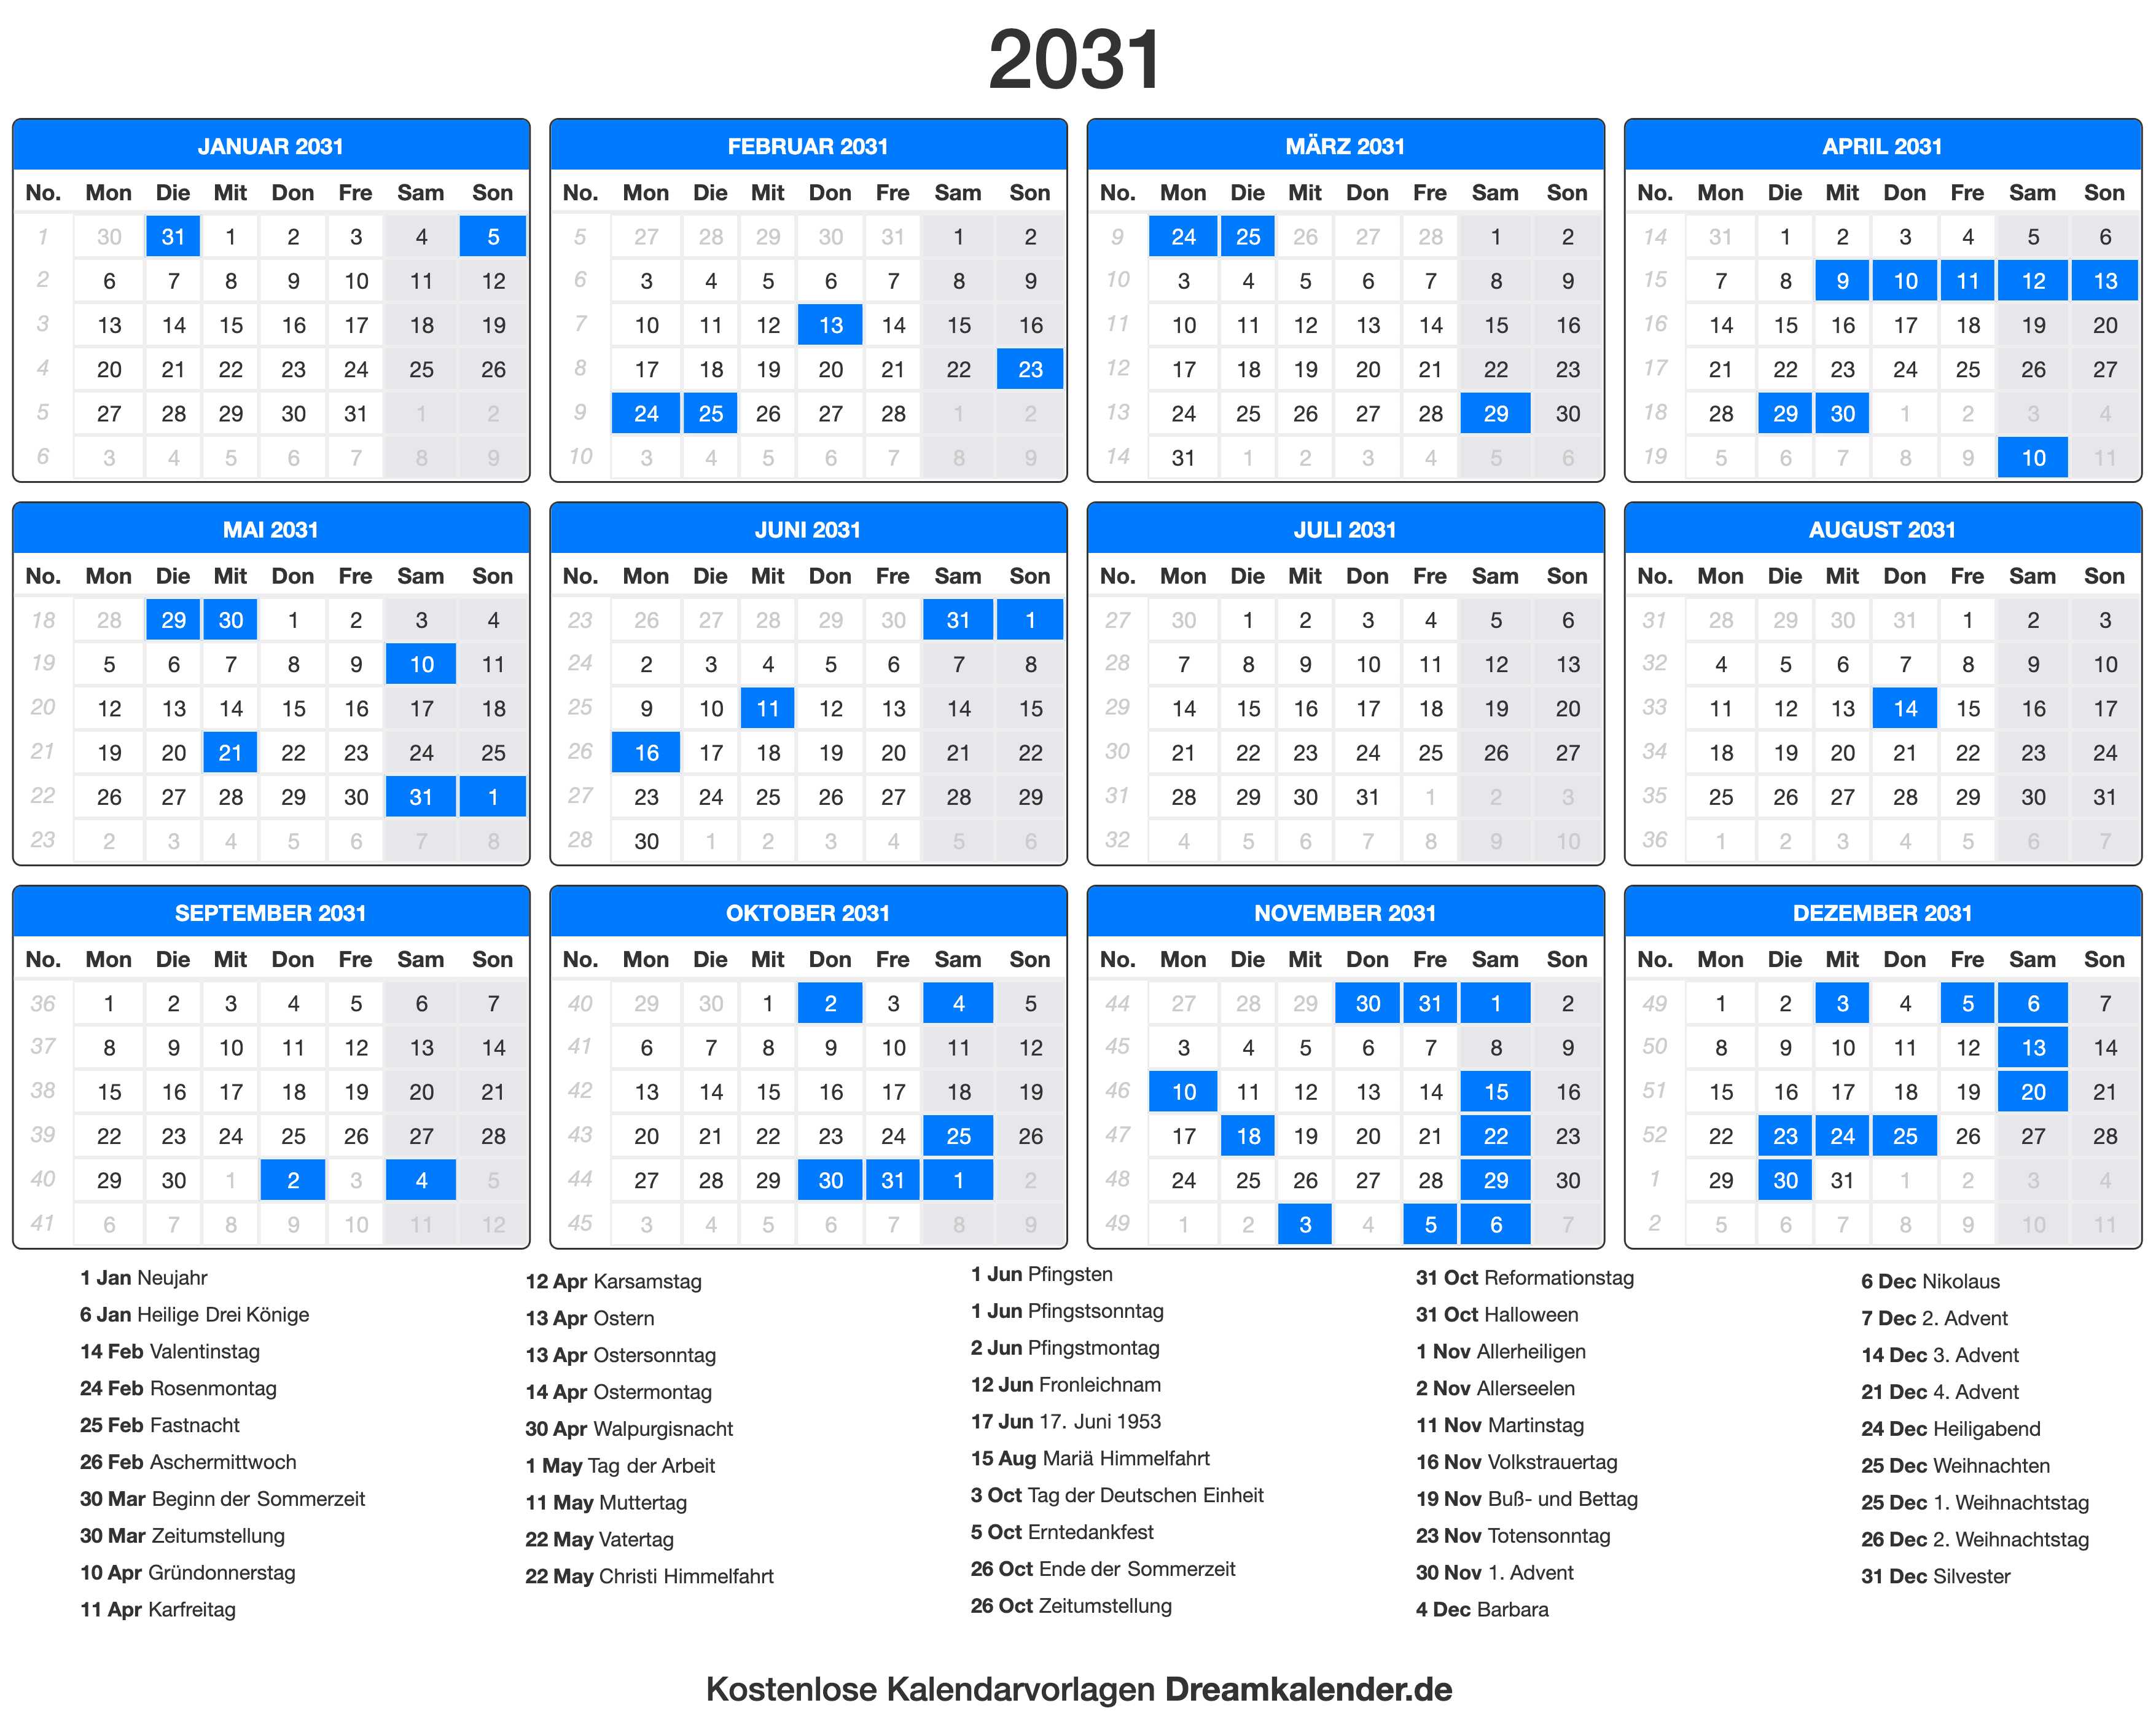 Выходные в 2025 году в россии календарь